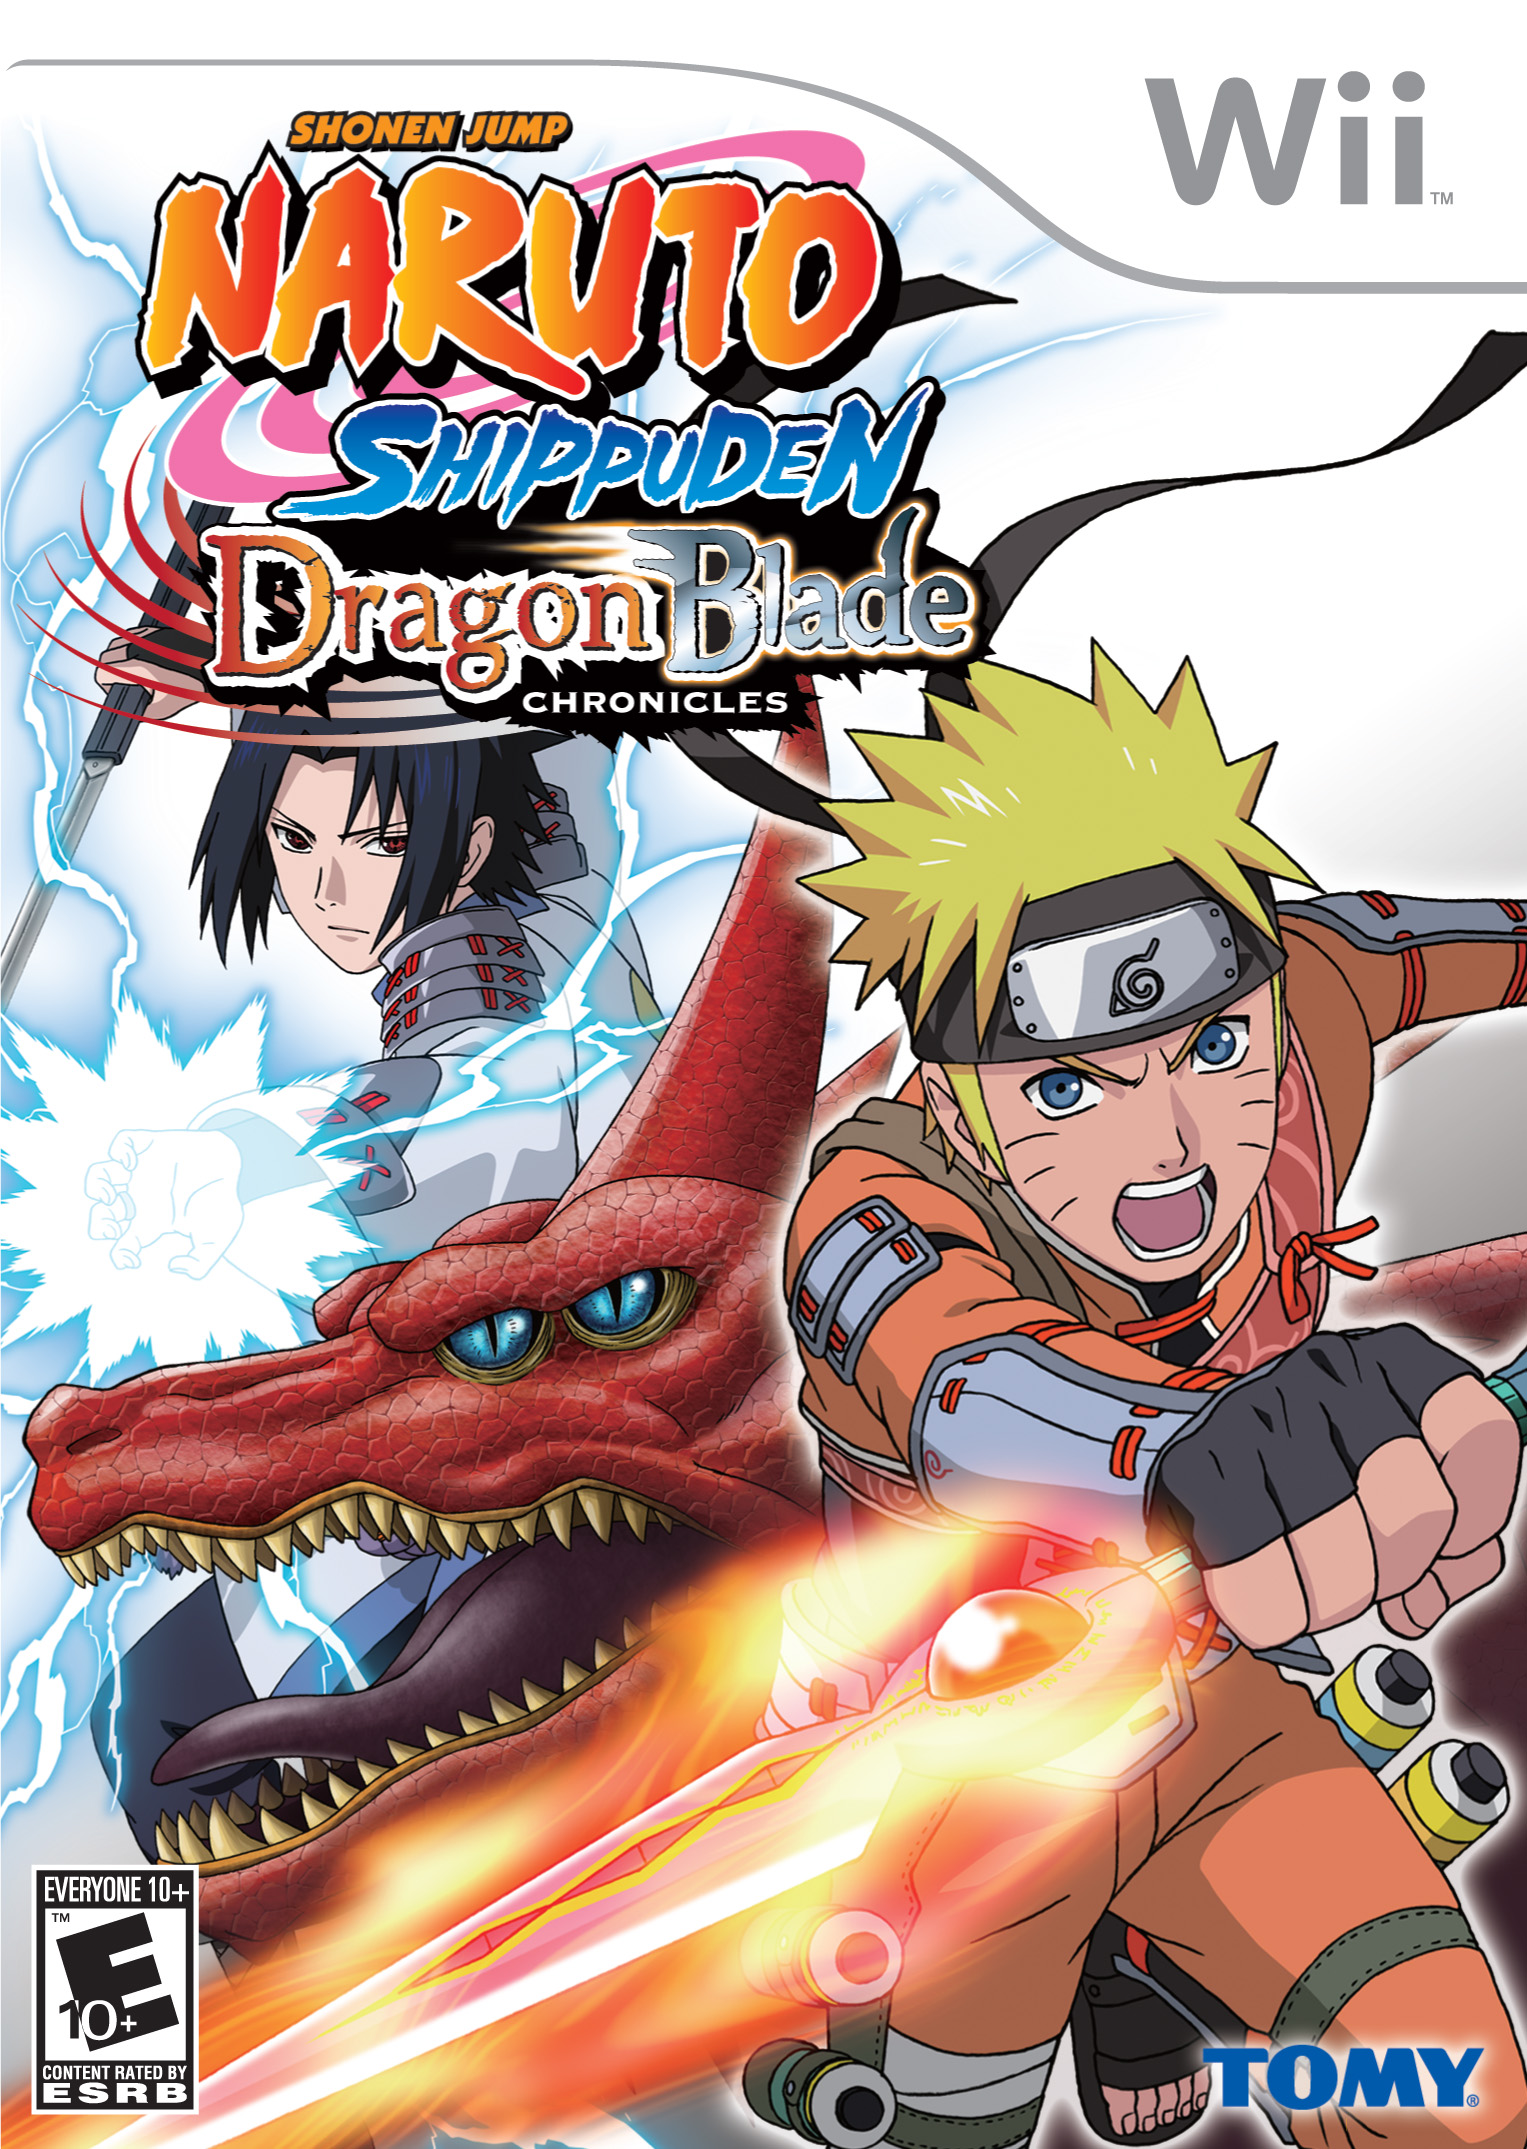 Naruto Shippūden: Dragon Blade Chronicles, Narutopedia